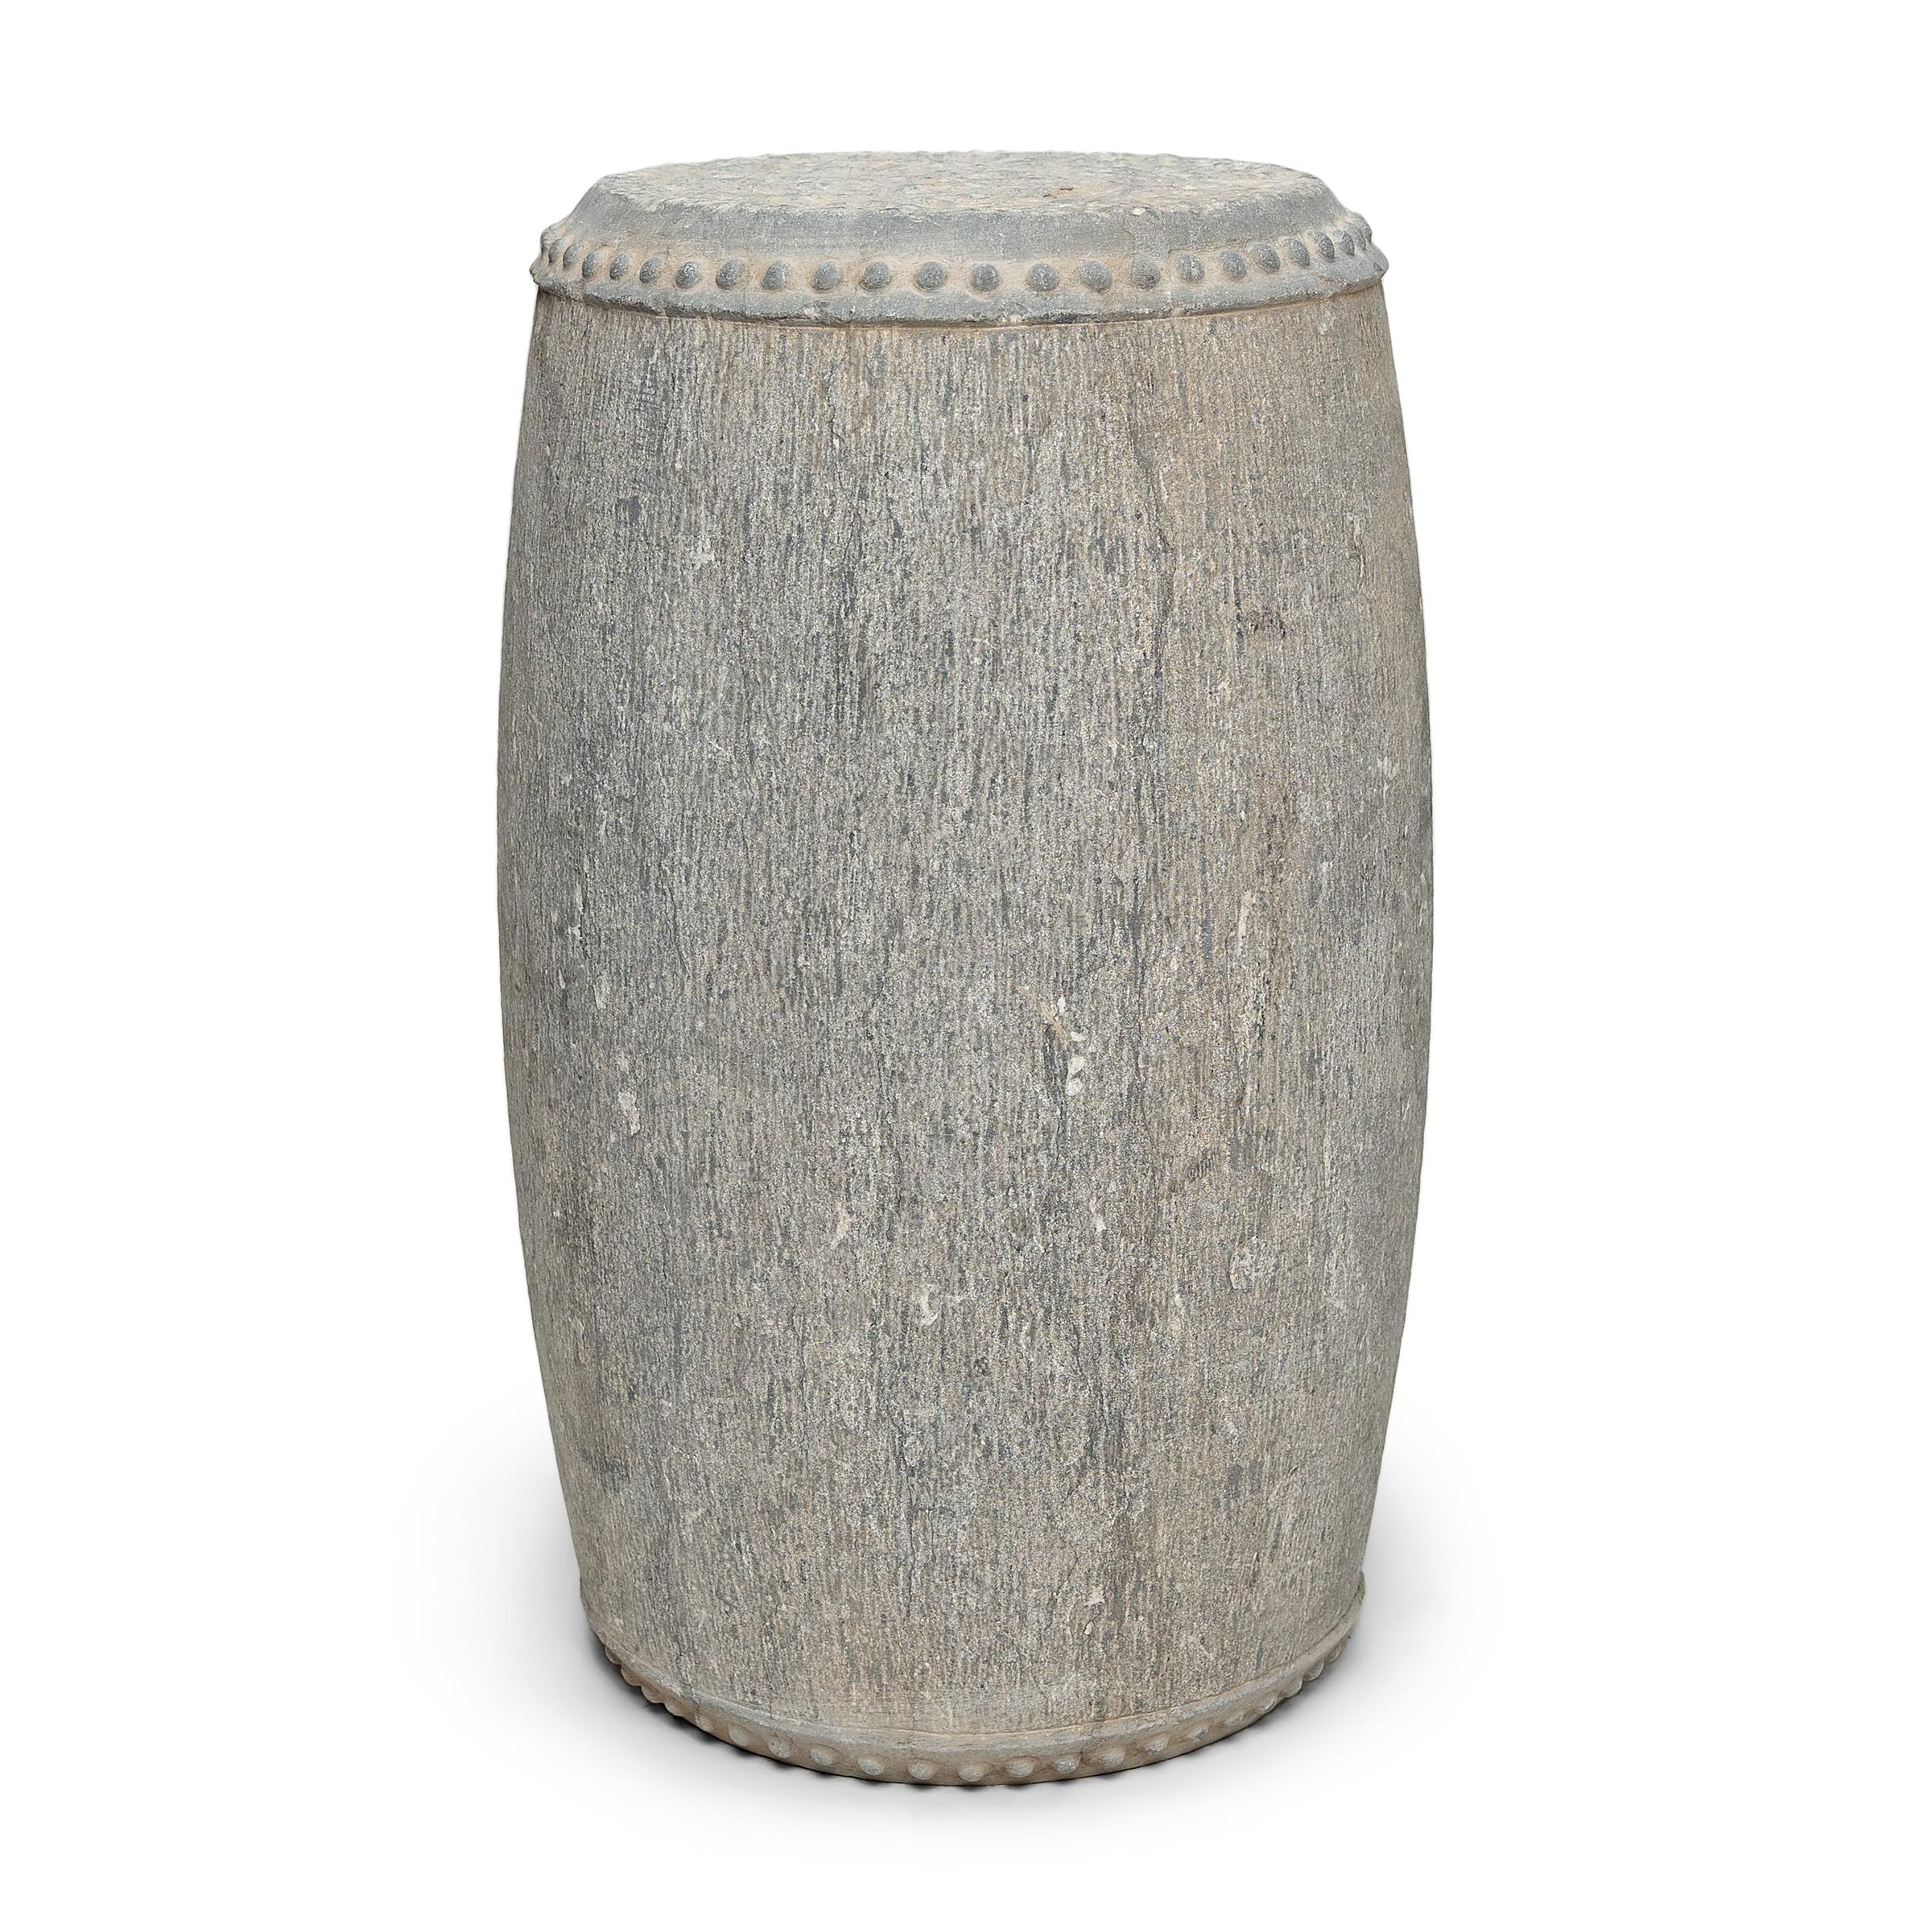 Ce tabouret tambour élancé en pierre a été sculpté dans un bloc massif de calcaire avec une forme simple et une décoration minimale. Le dessus et le dessous sont cerclés de clous en relief, un motif destiné à imiter les rivets en fer qui fixent la